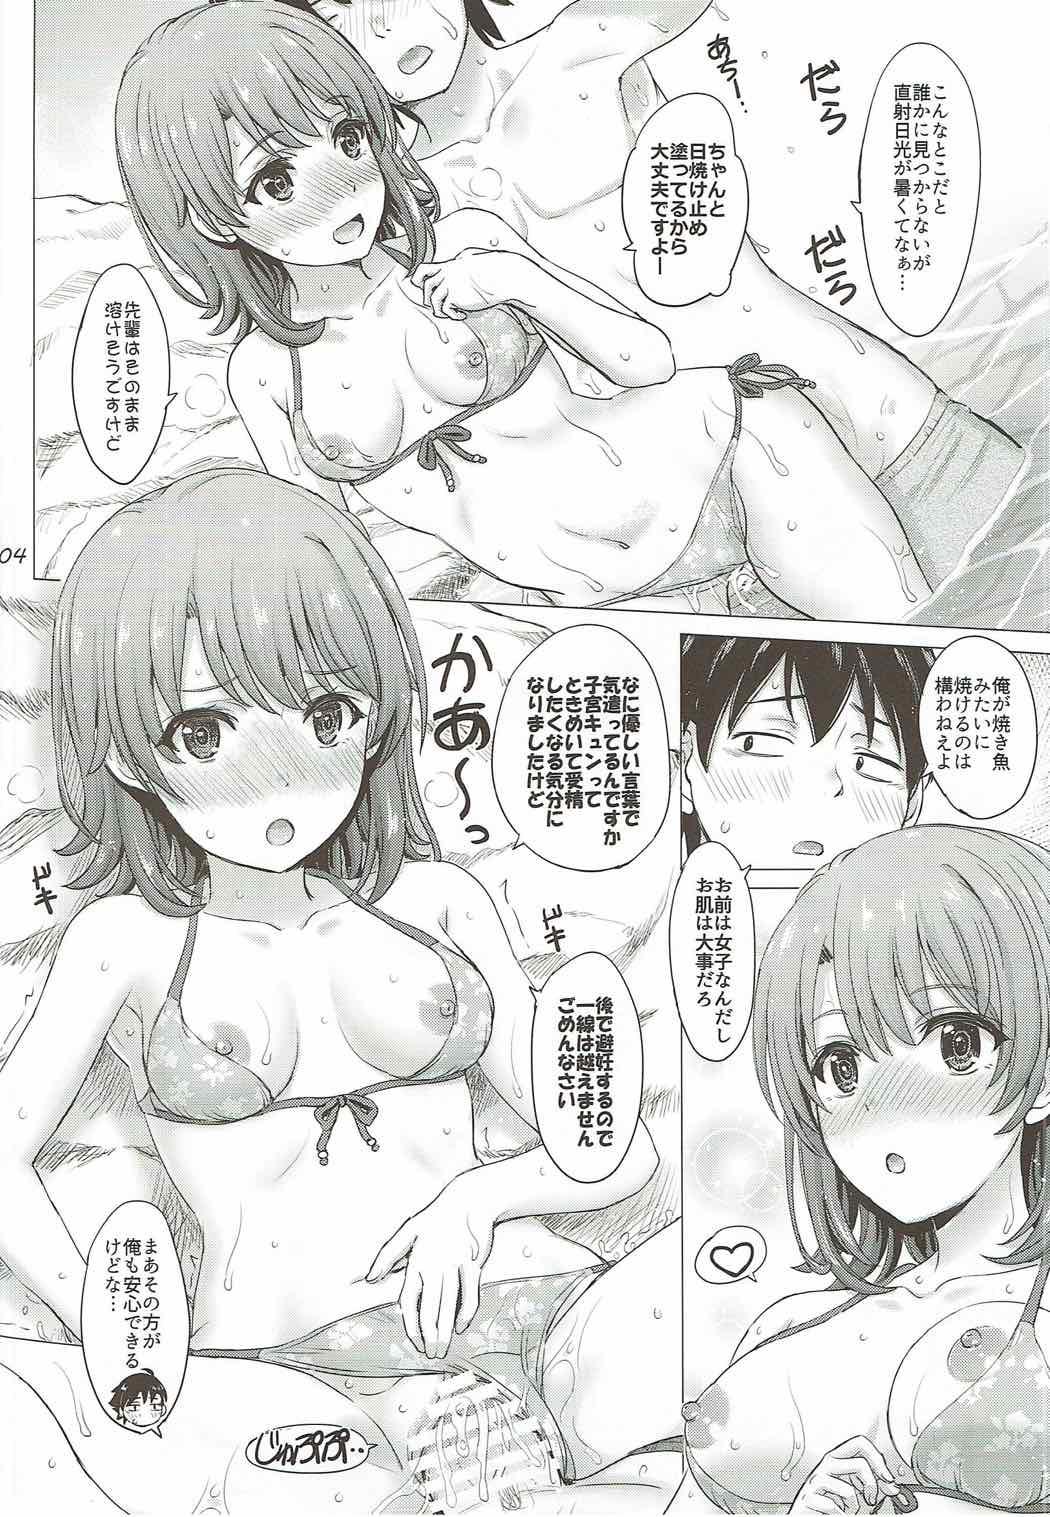 Young Petite Porn Isshiki Iroha no Iyarashii Natsuyasumi. - Yahari ore no seishun love come wa machigatteiru Panties - Page 3